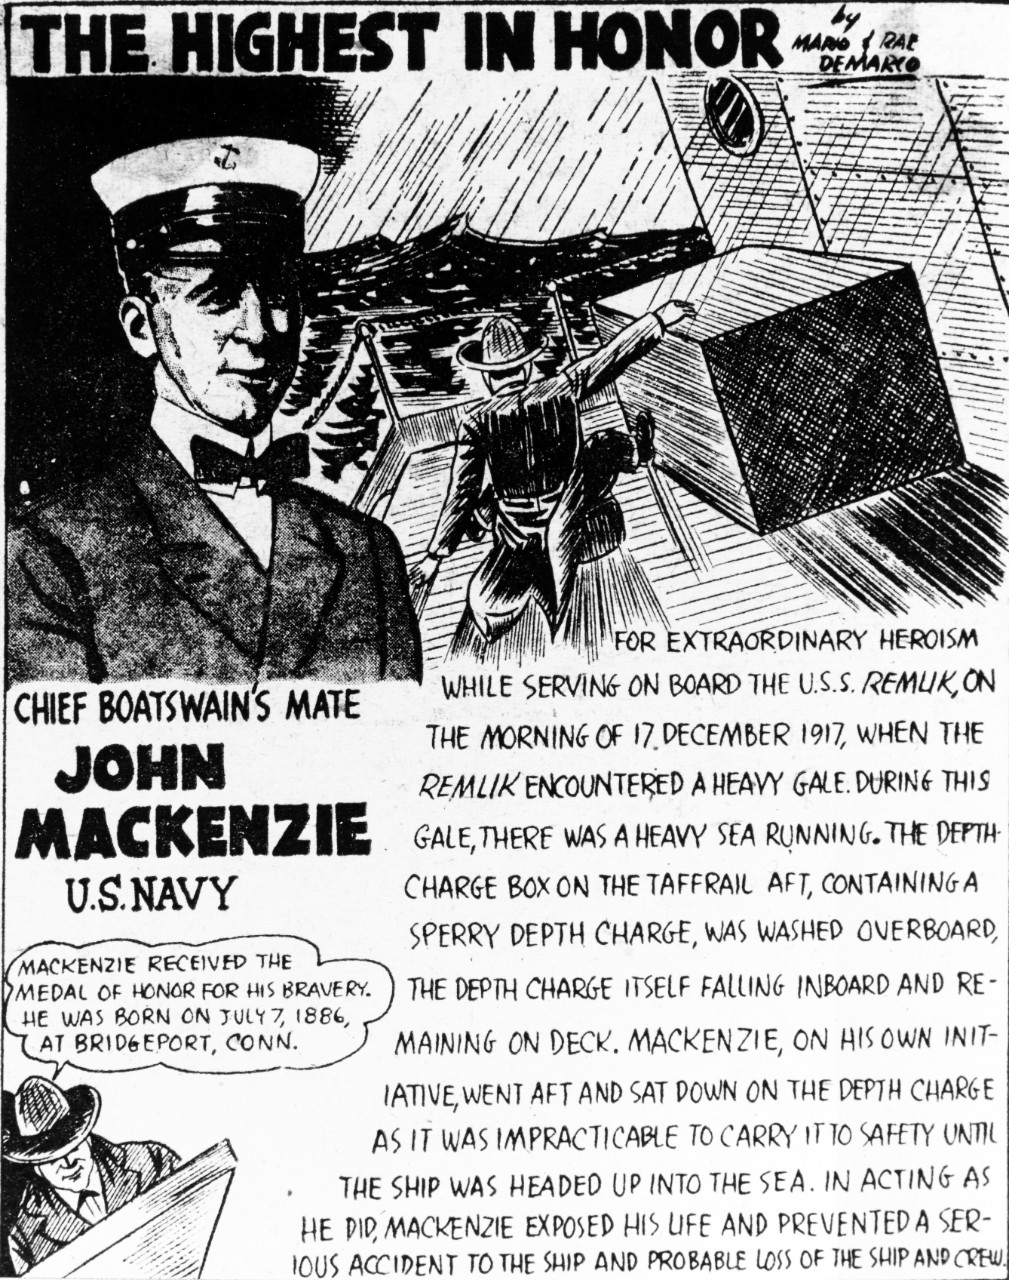 John Mackenzie, Chief Boatswain's Mate